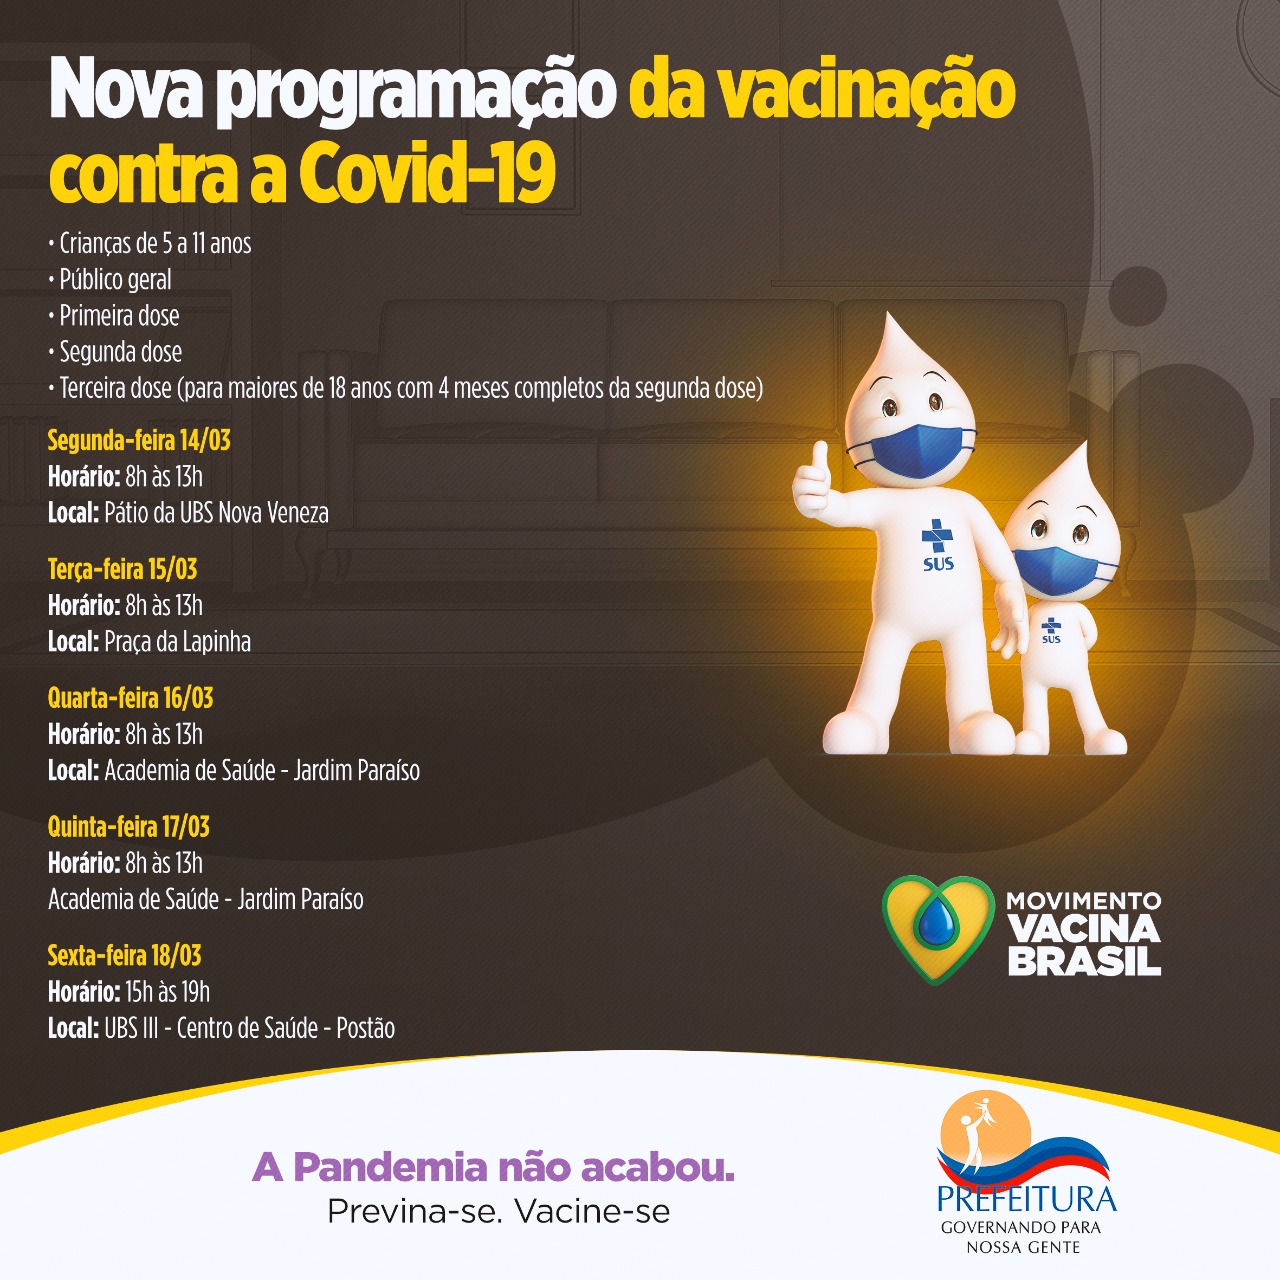 Hoje (4) tem exibição de Sonic na retomada do projeto Cinema no Bairro -  Prefeitura Municipal da Estância Turística de Pereira Barreto